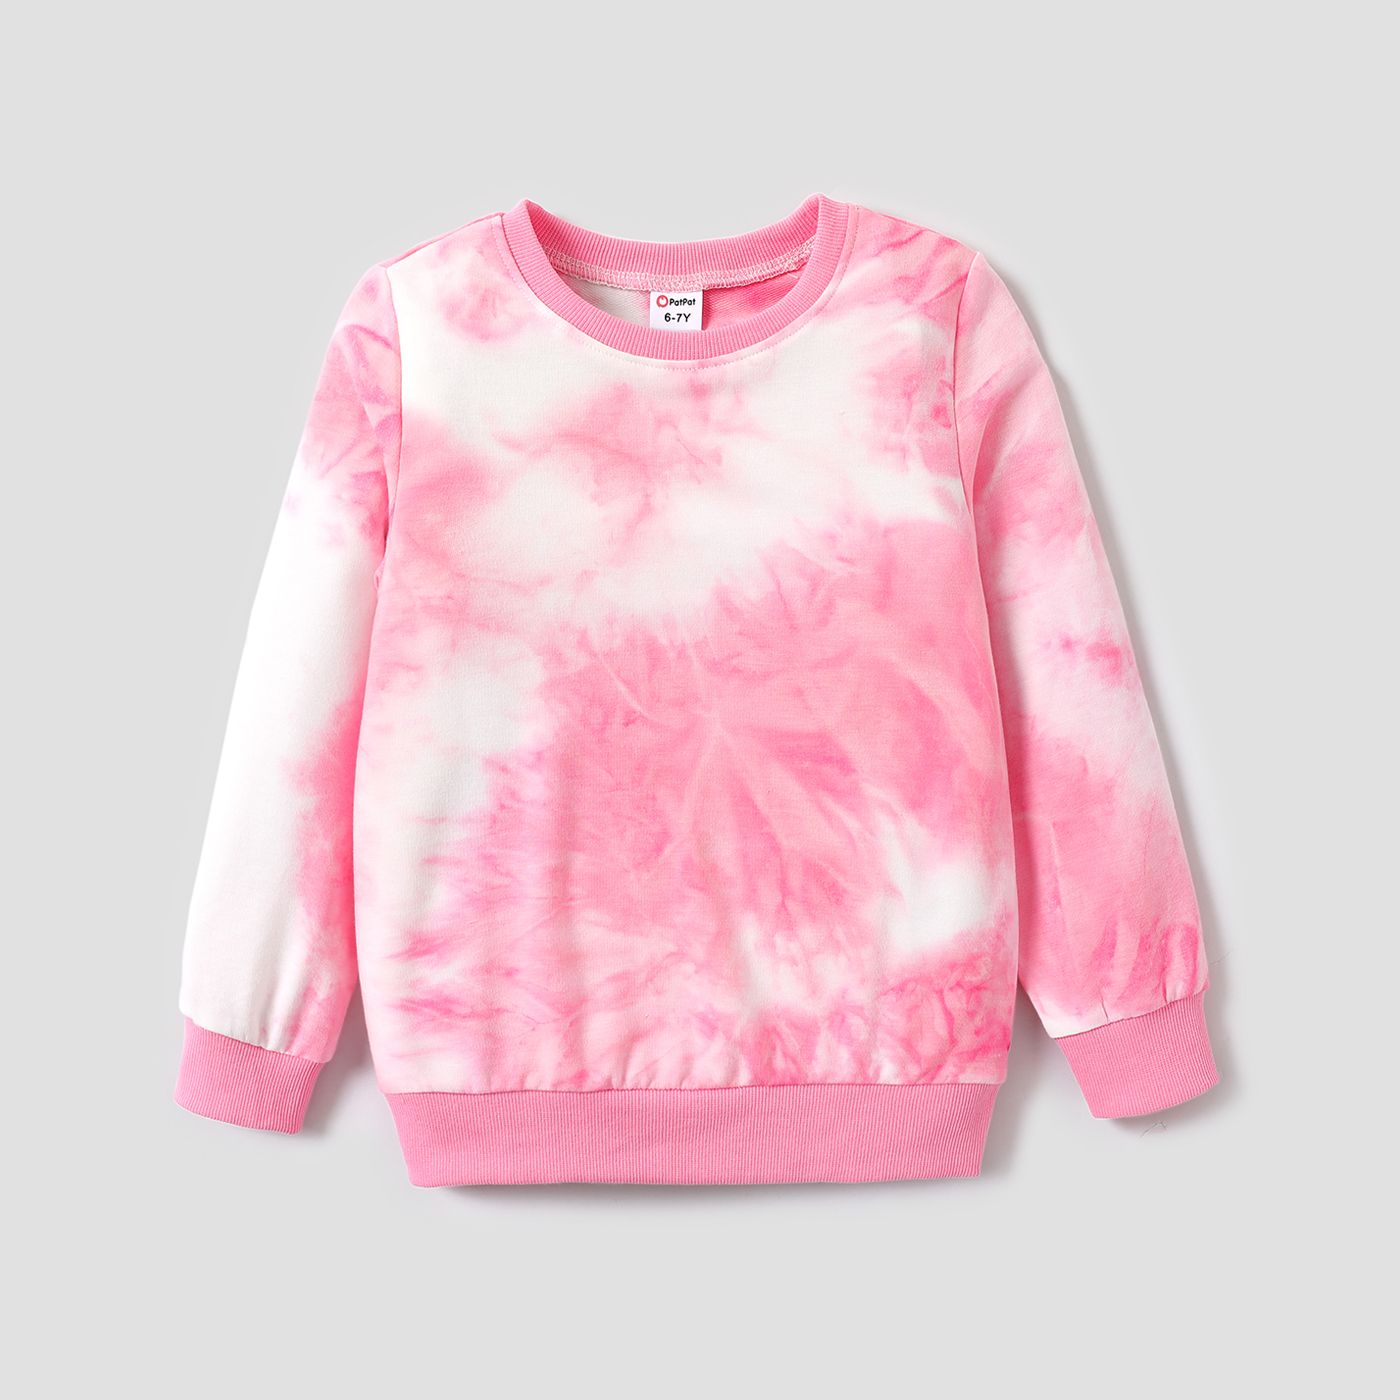 Kid Girl / Boy Fashionable Casual Style Sweatshirt